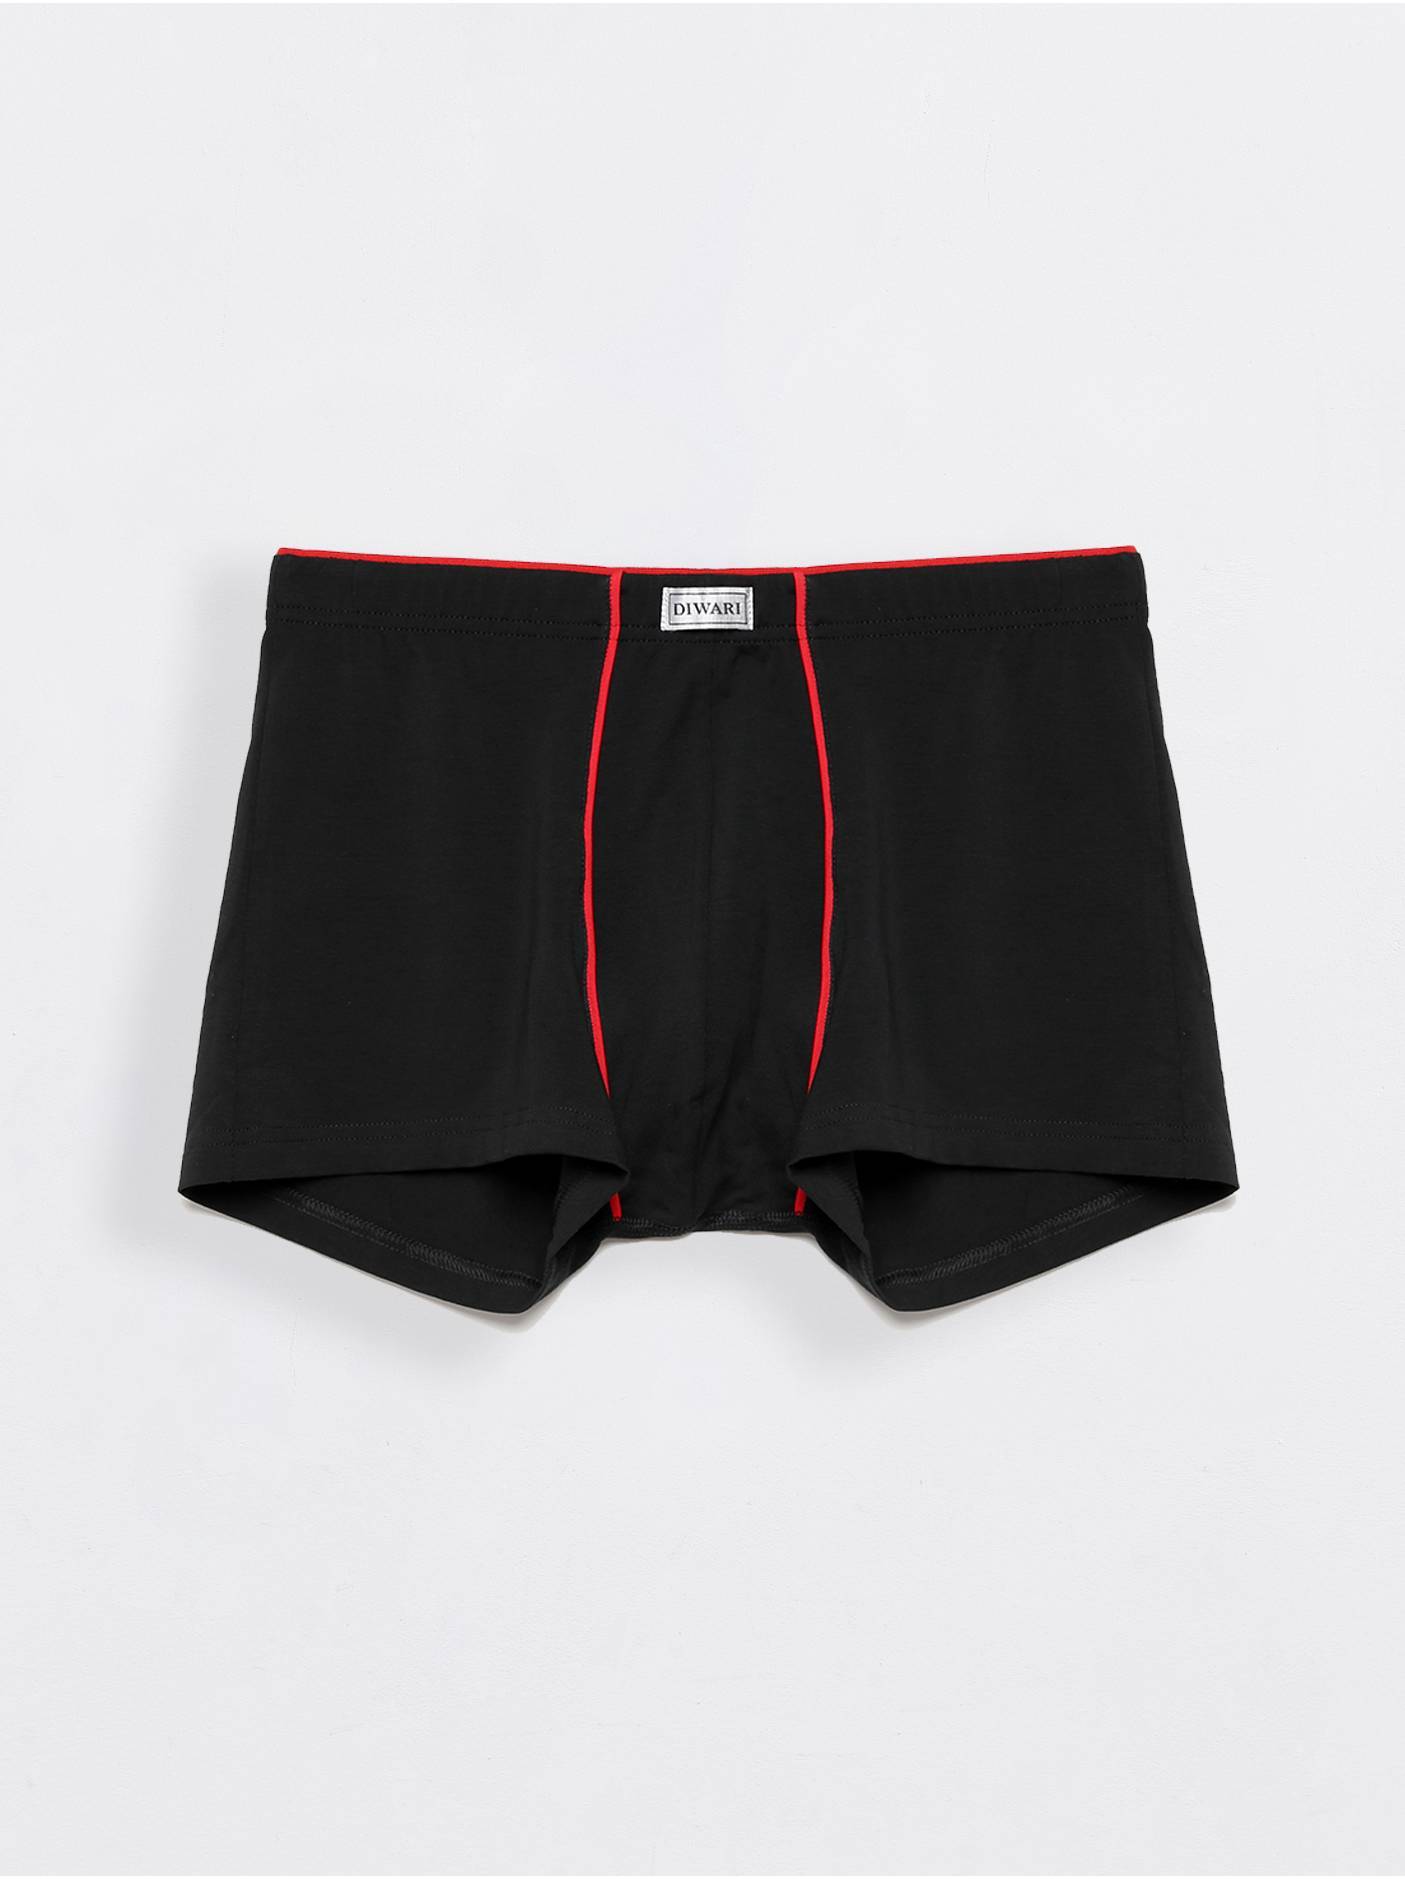 Хлопковые трусы-шорты PREMIUM MSH 760.1 Conte ⭐️, цвет black, размер 102